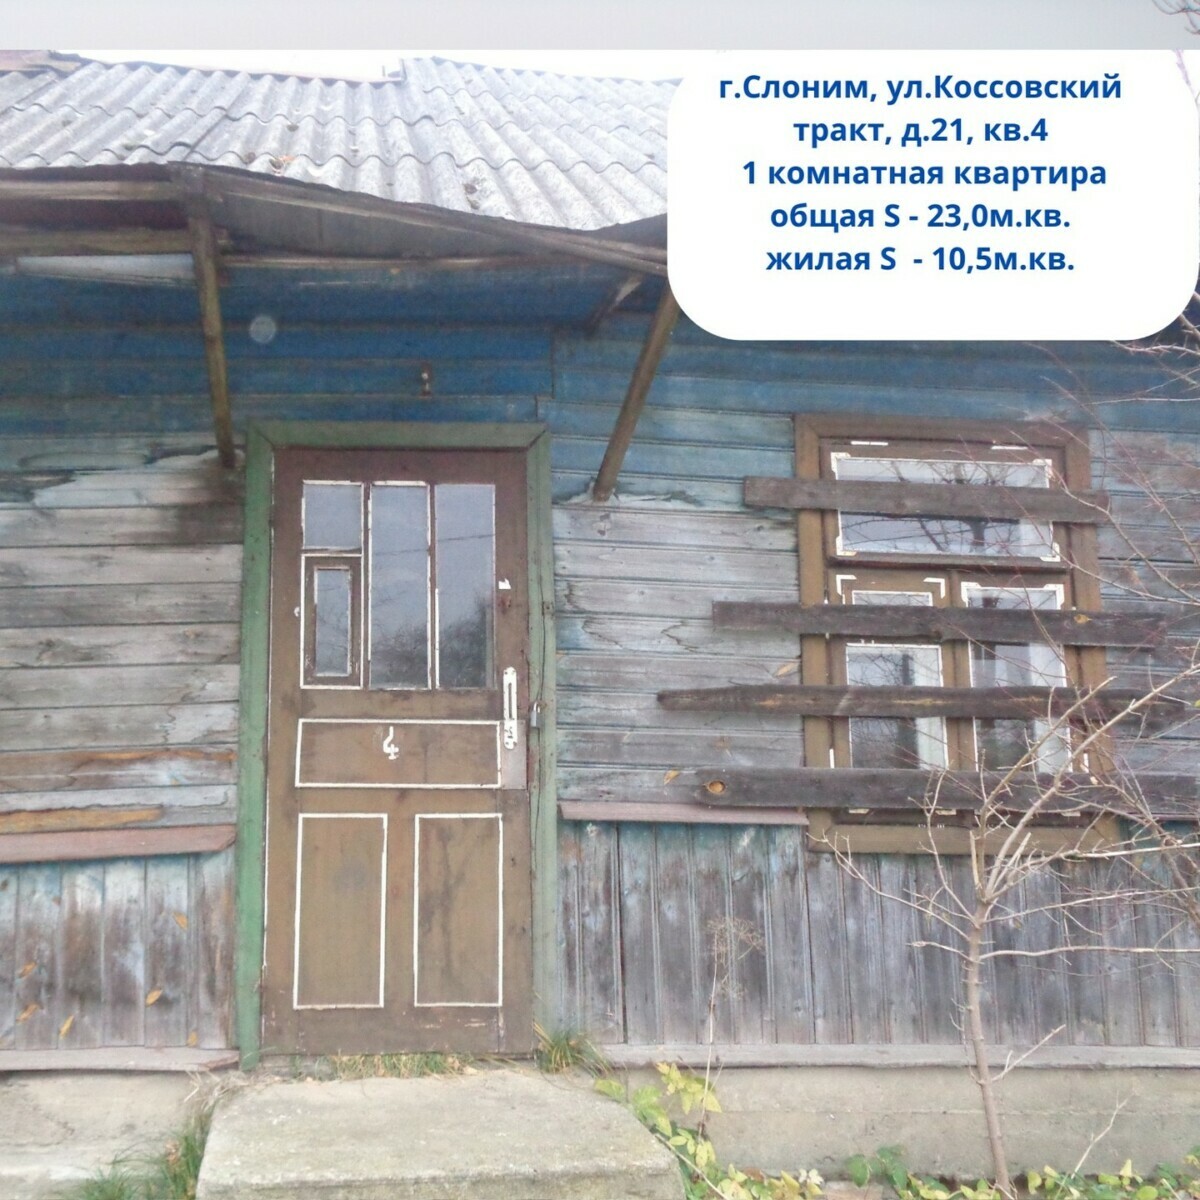 Где в Беларуси можно купить квартиру за одну базовую? Есть целых 6 вариантов